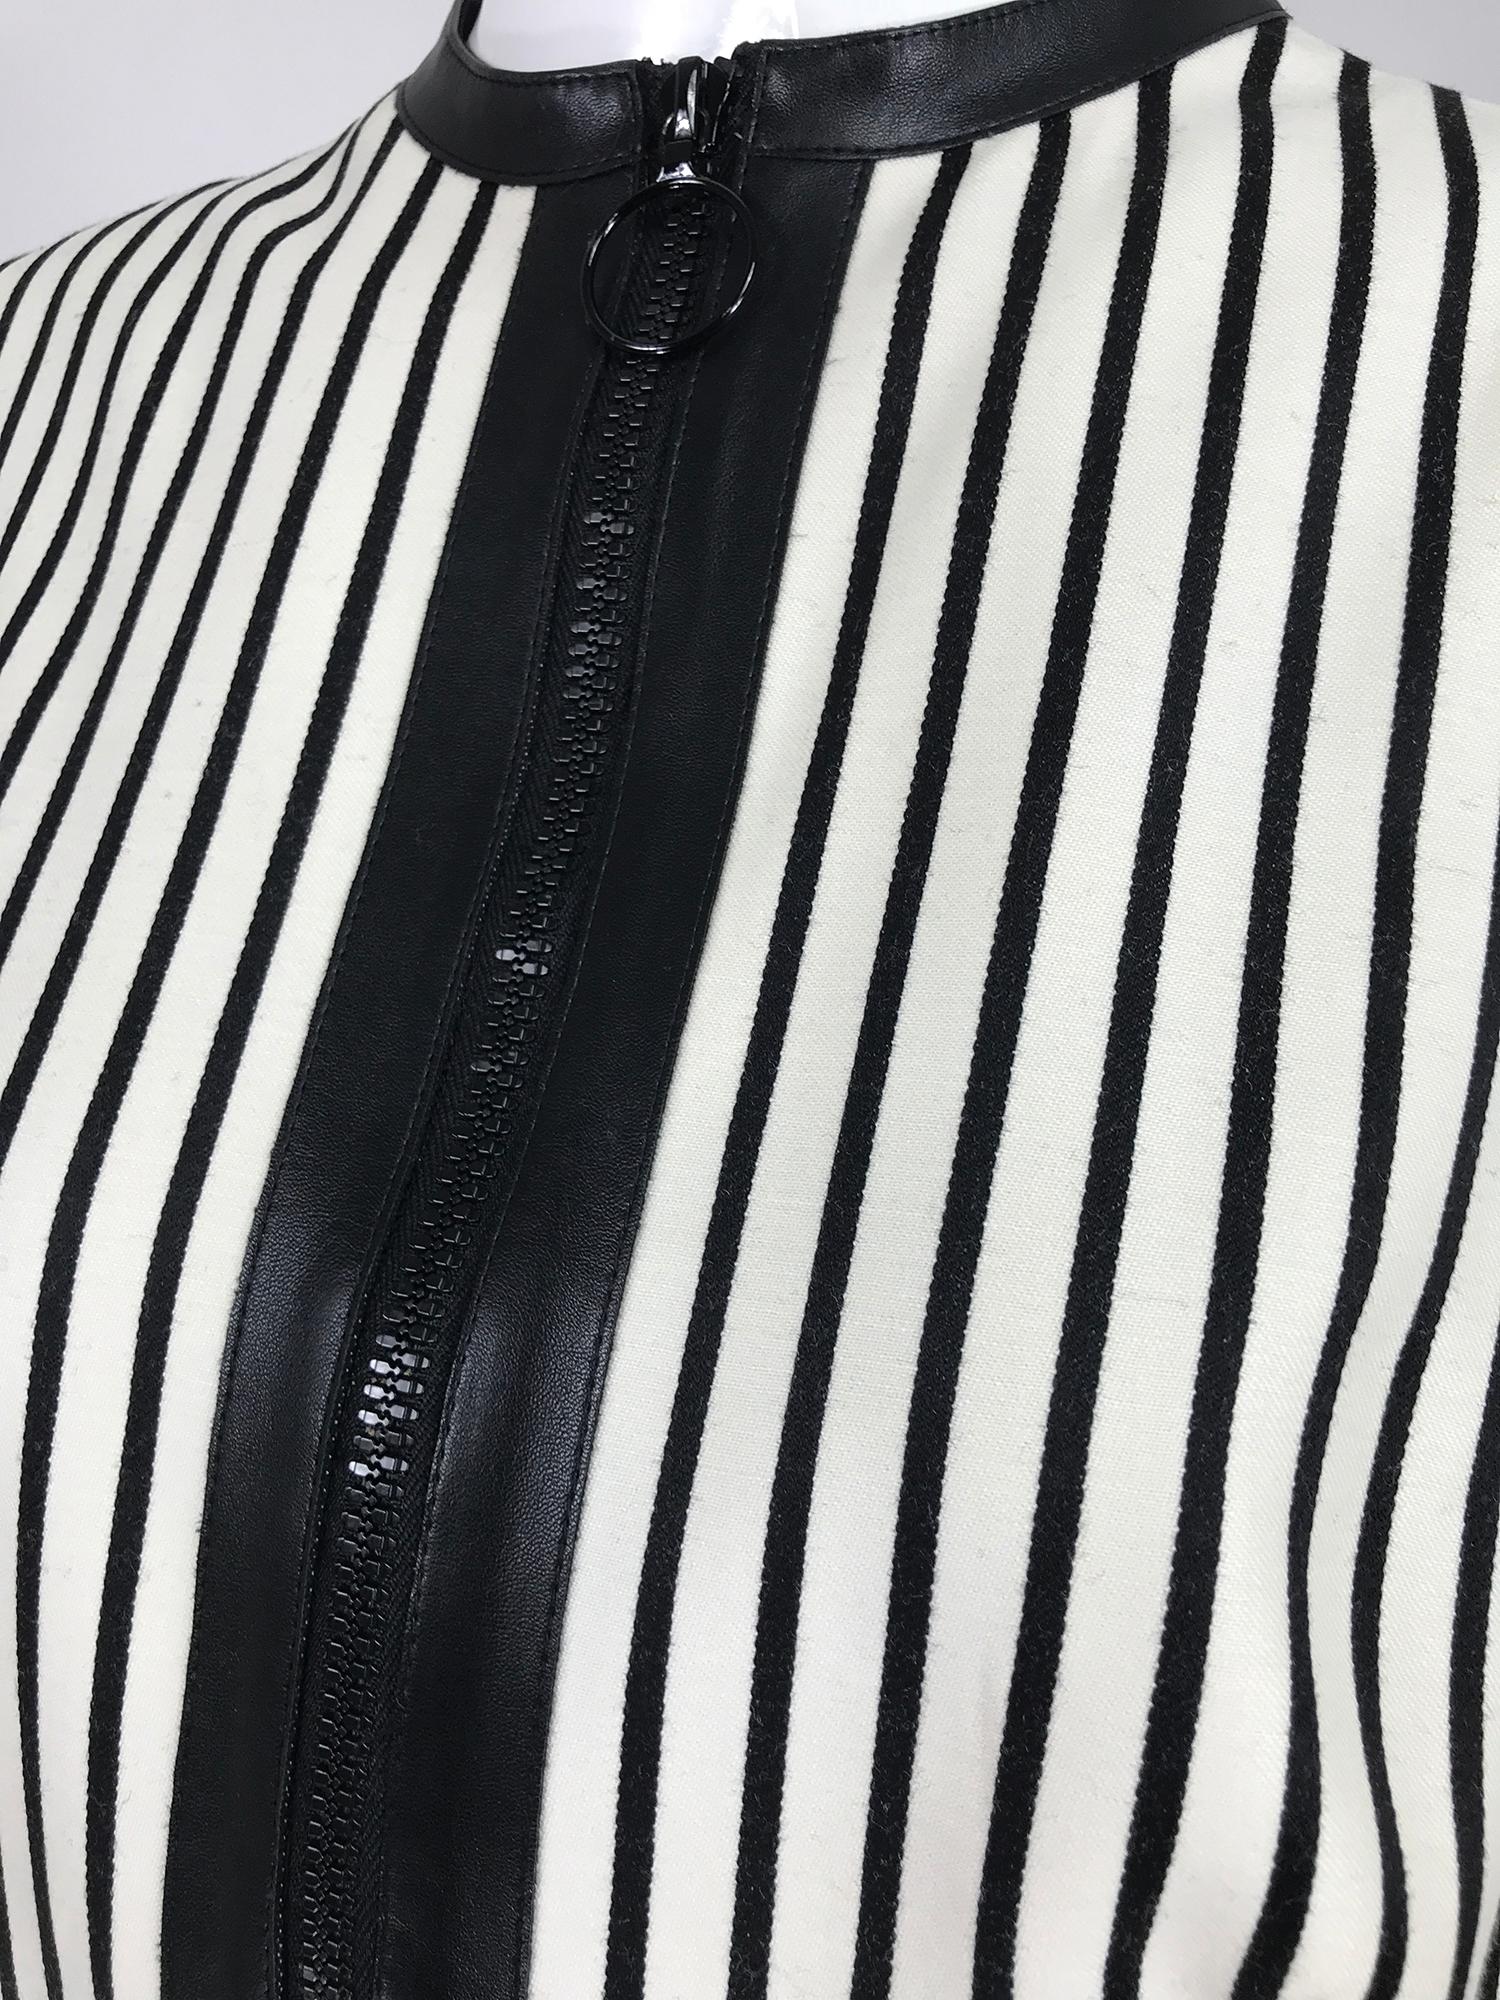 Akris Punto Black and White Stripe Zipper Front Tunic 1